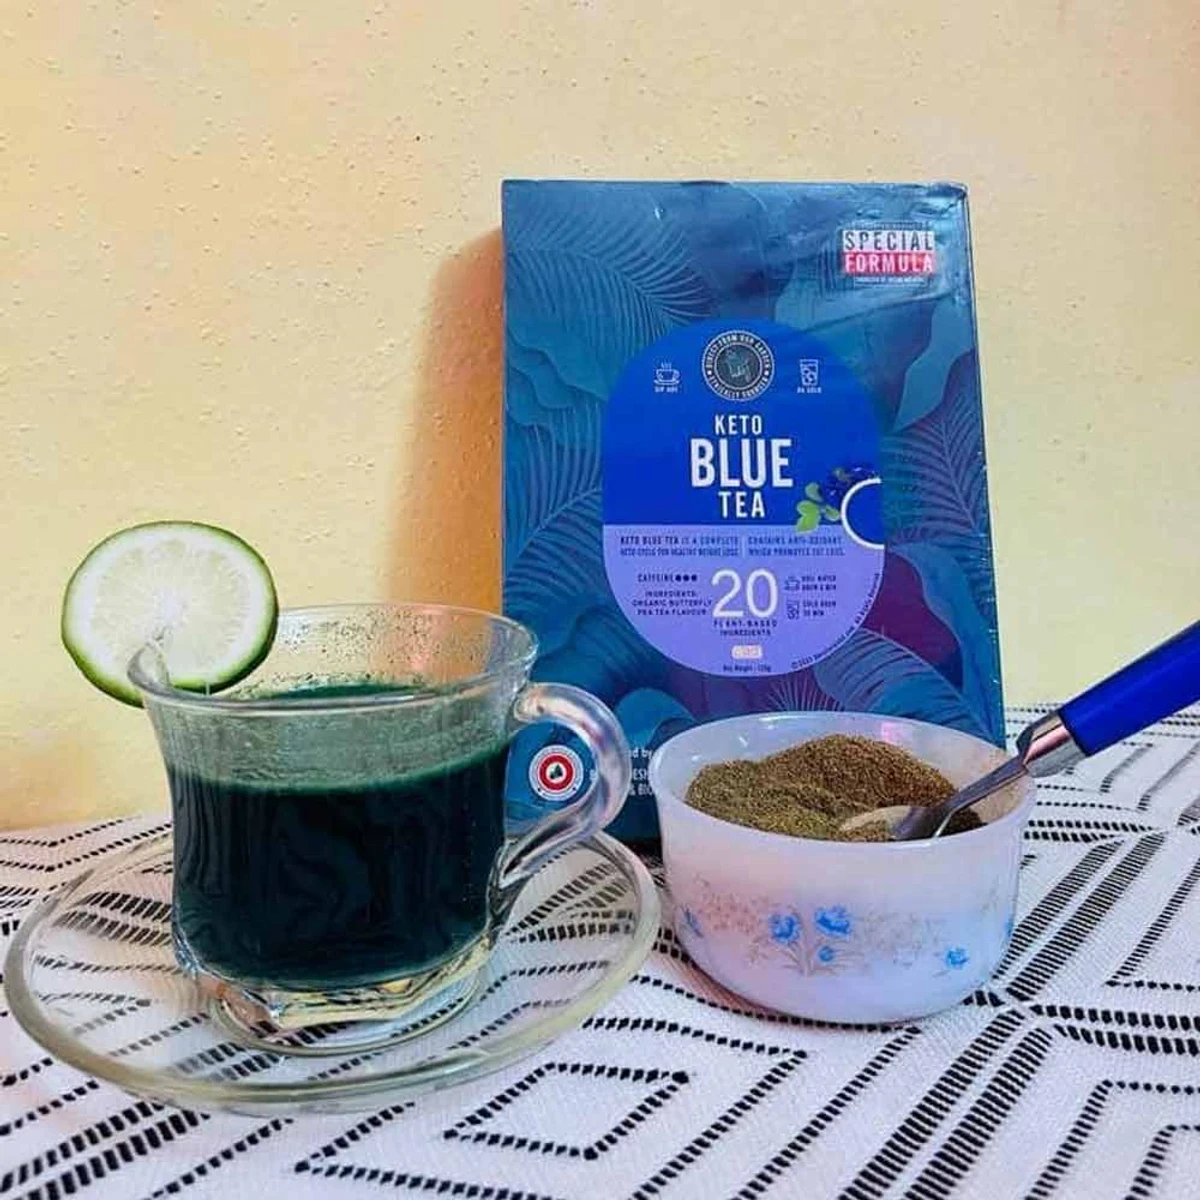 Keto Blue Tea